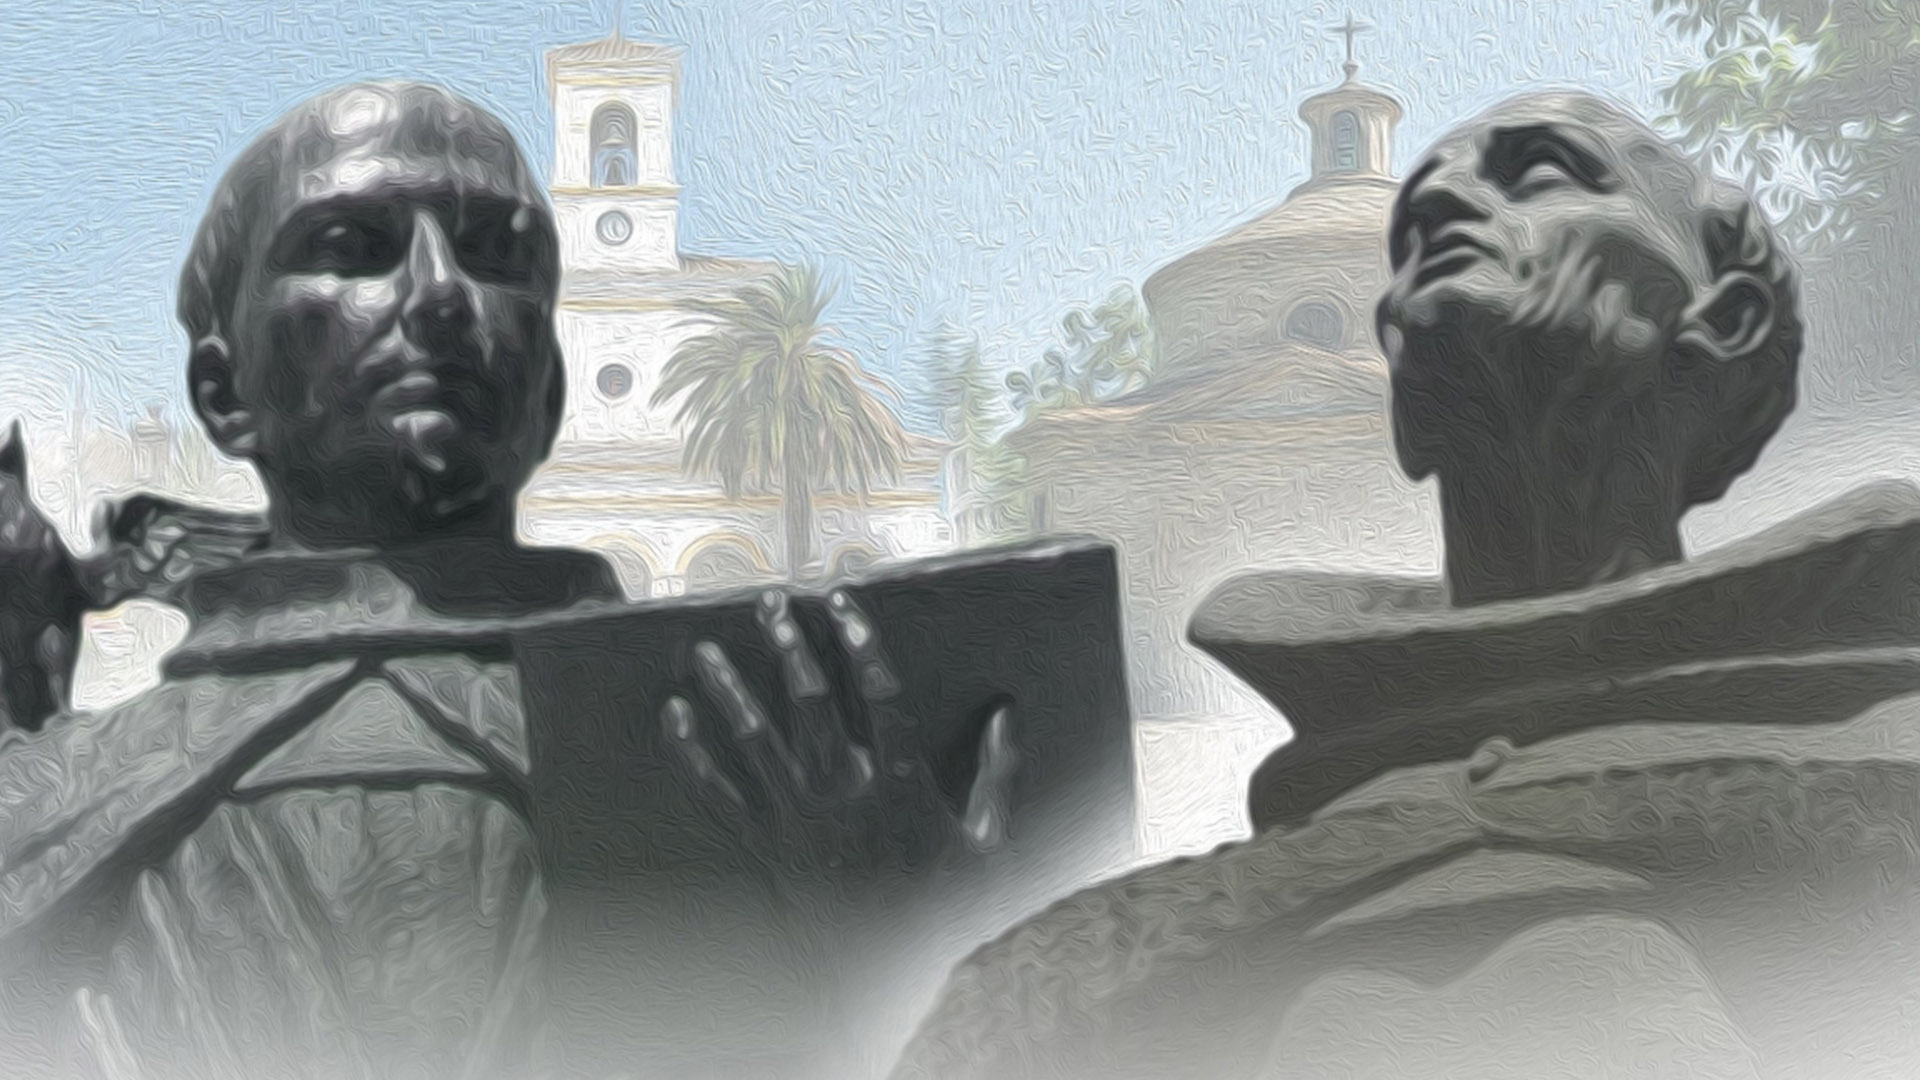 Se hace público el programa del hermanamiento entre San Pedro Alcántara y Arenas de San Pedro